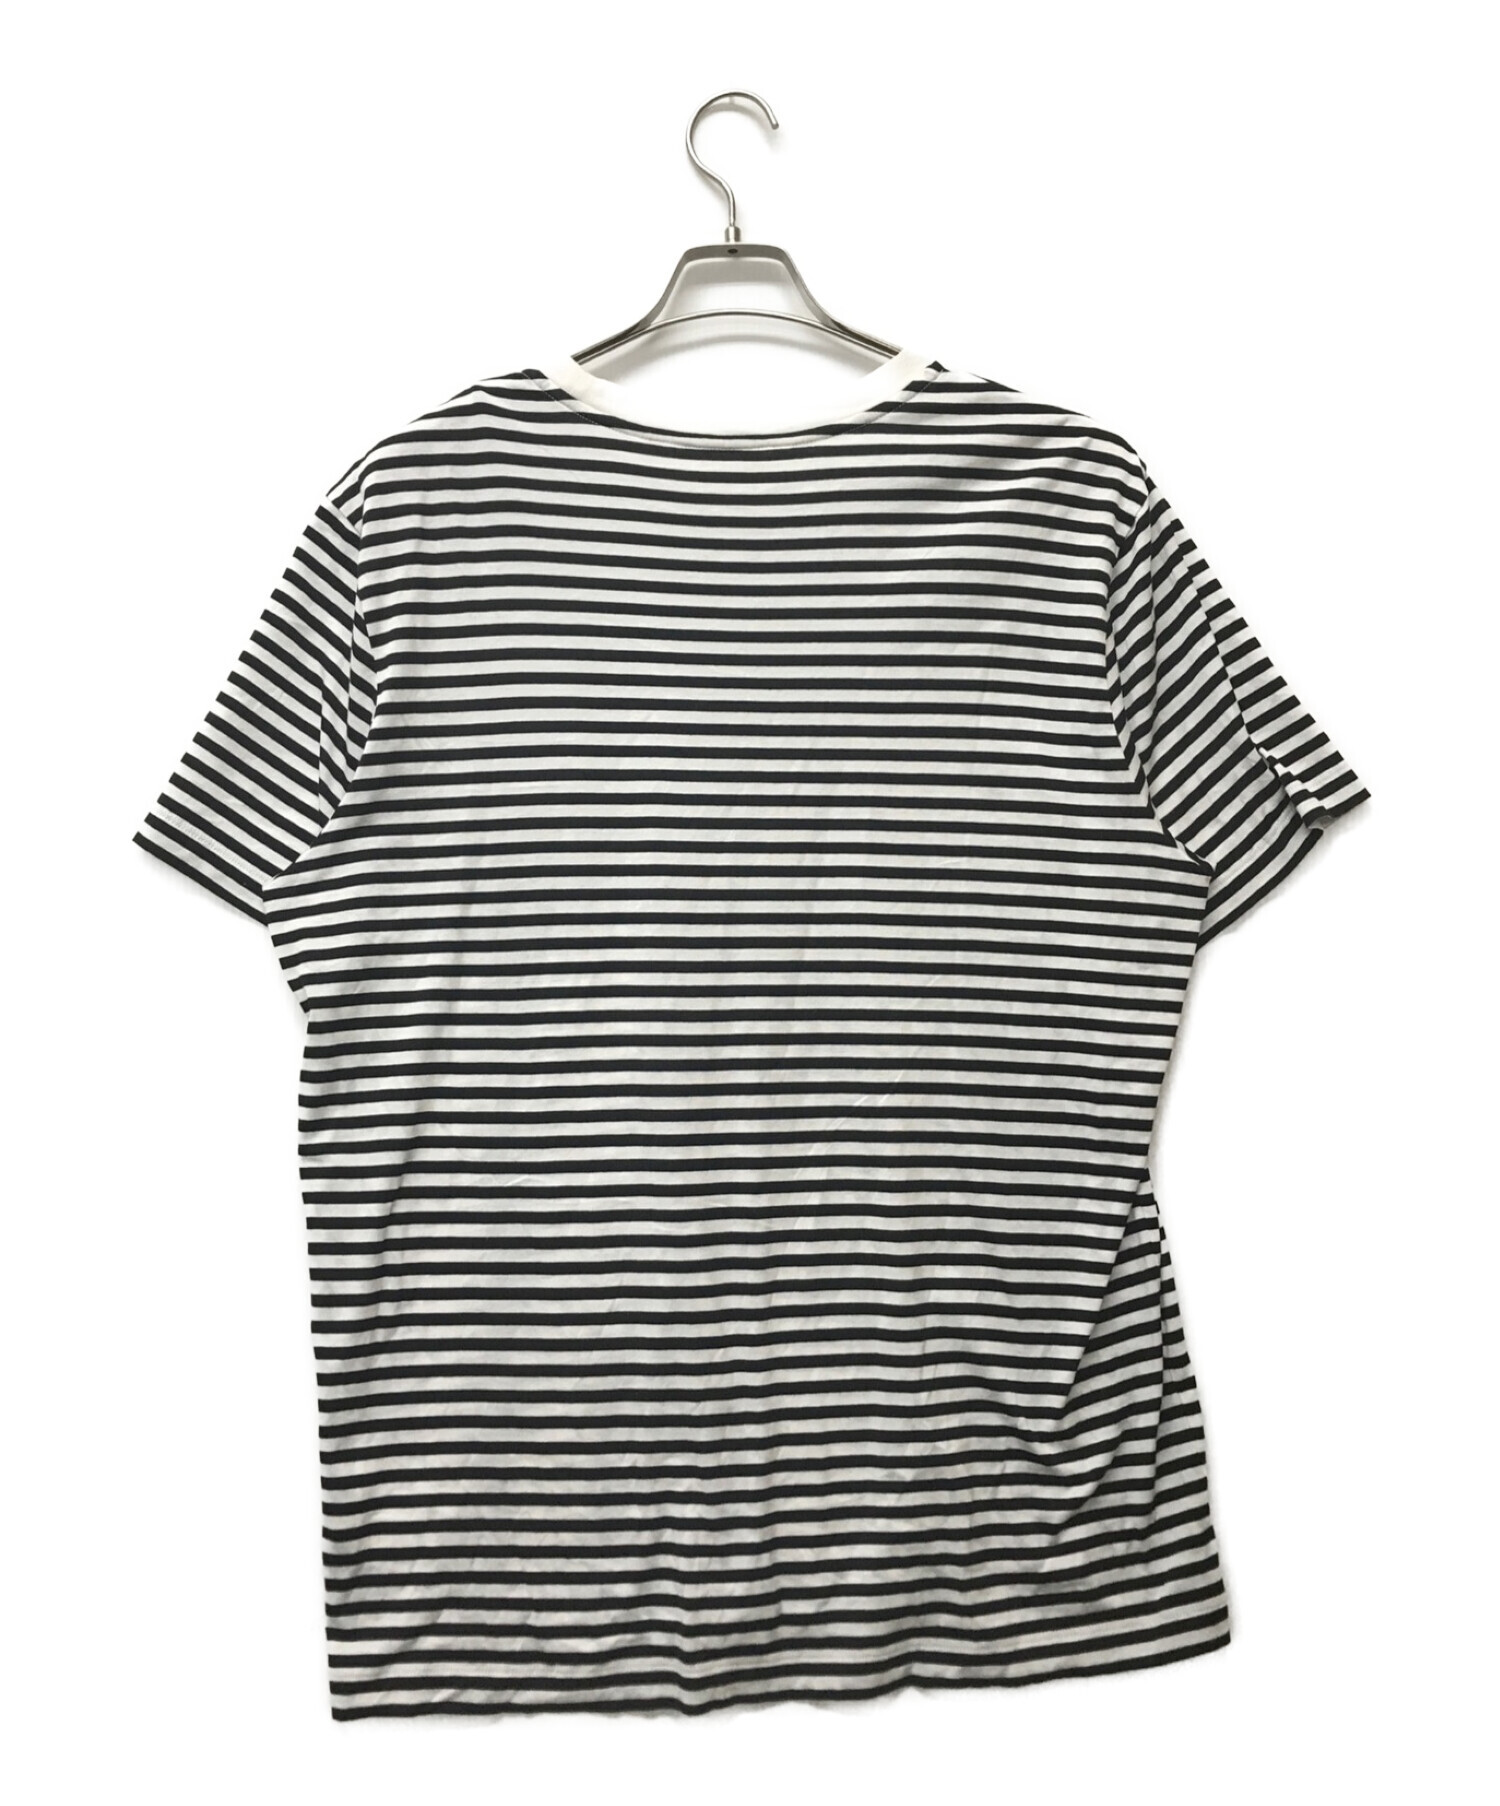 MONCLER (モンクレール) メタリックロゴボーダーTシャツ ホワイト×ブラック サイズ:L